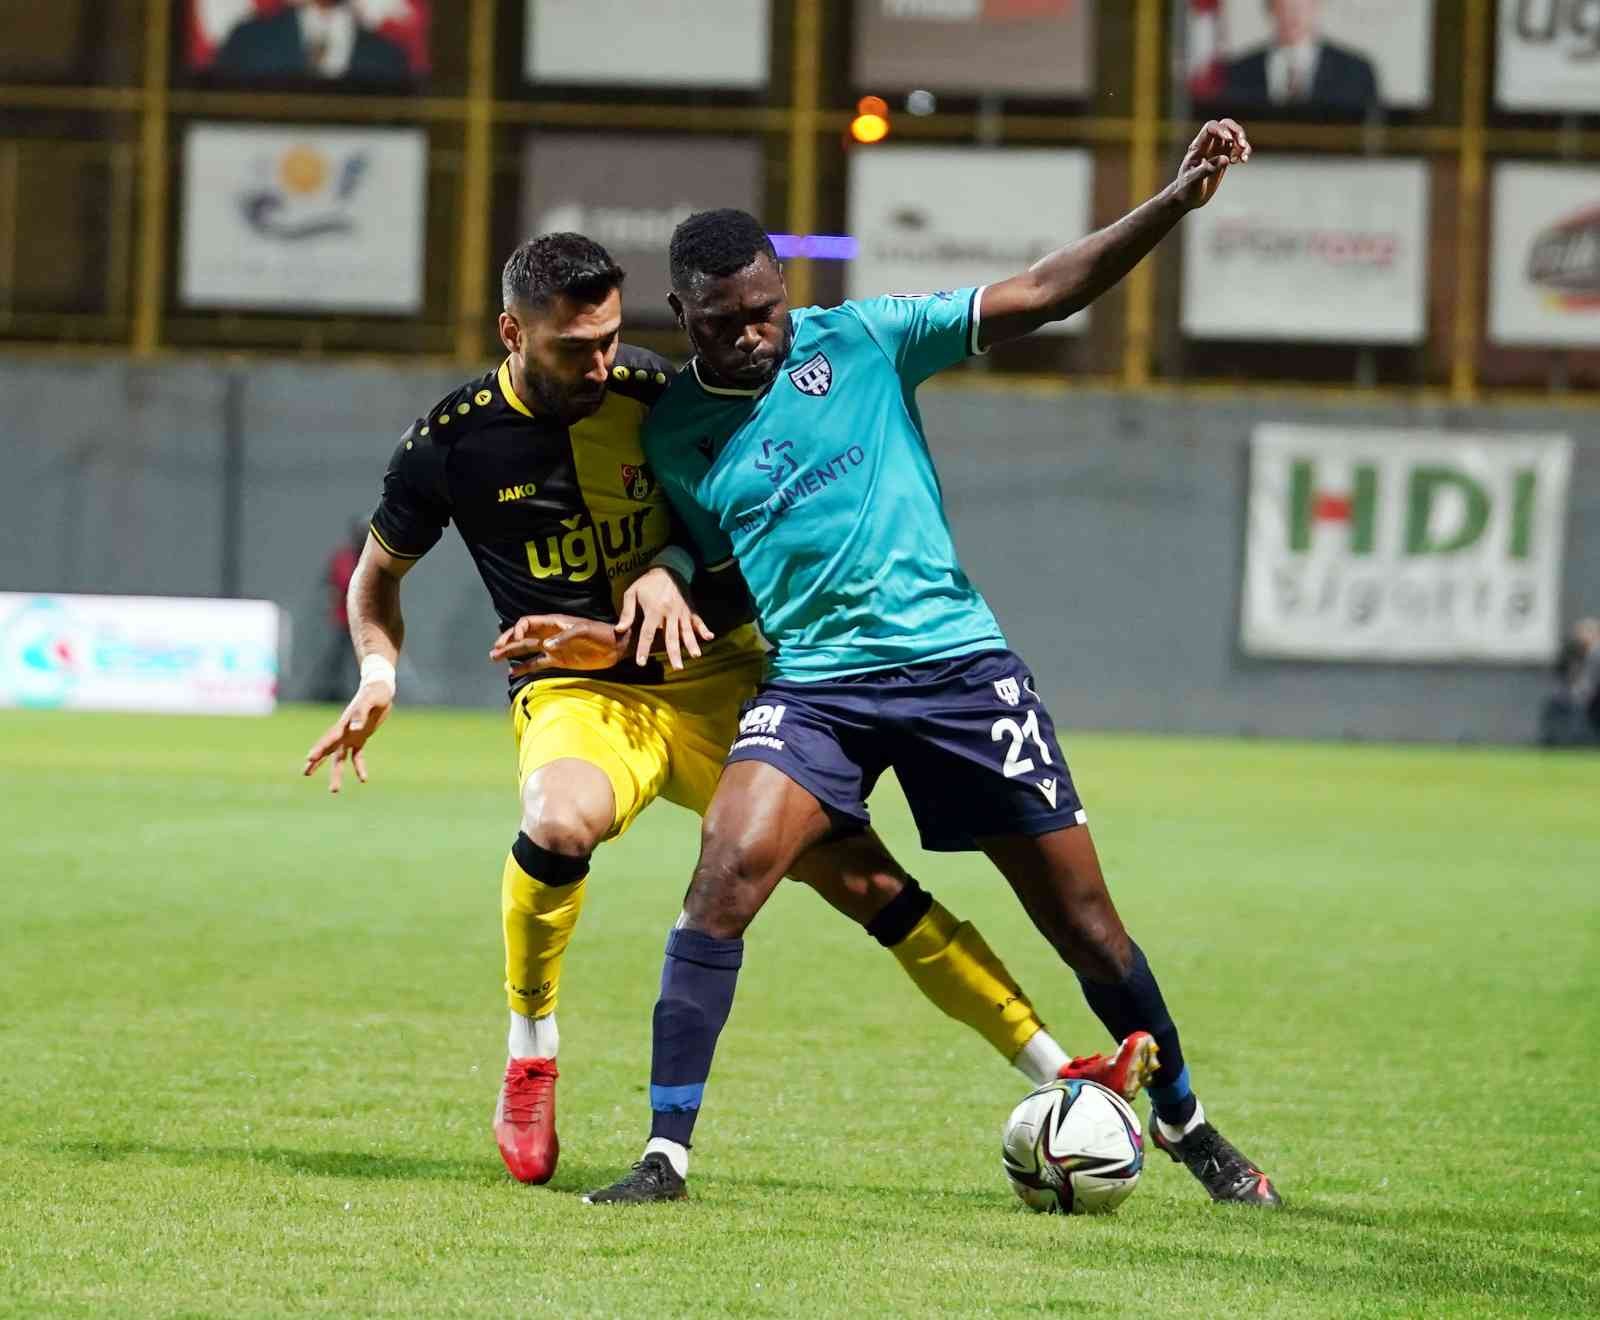 Spor Toto 1. Lig’in 38. ve son haftasında İstanbulspor sahasında karşılaştığı Bandırmaspor ile 0-0 berabere kaldı. Maçtan dakikalar 5. dakikada ...